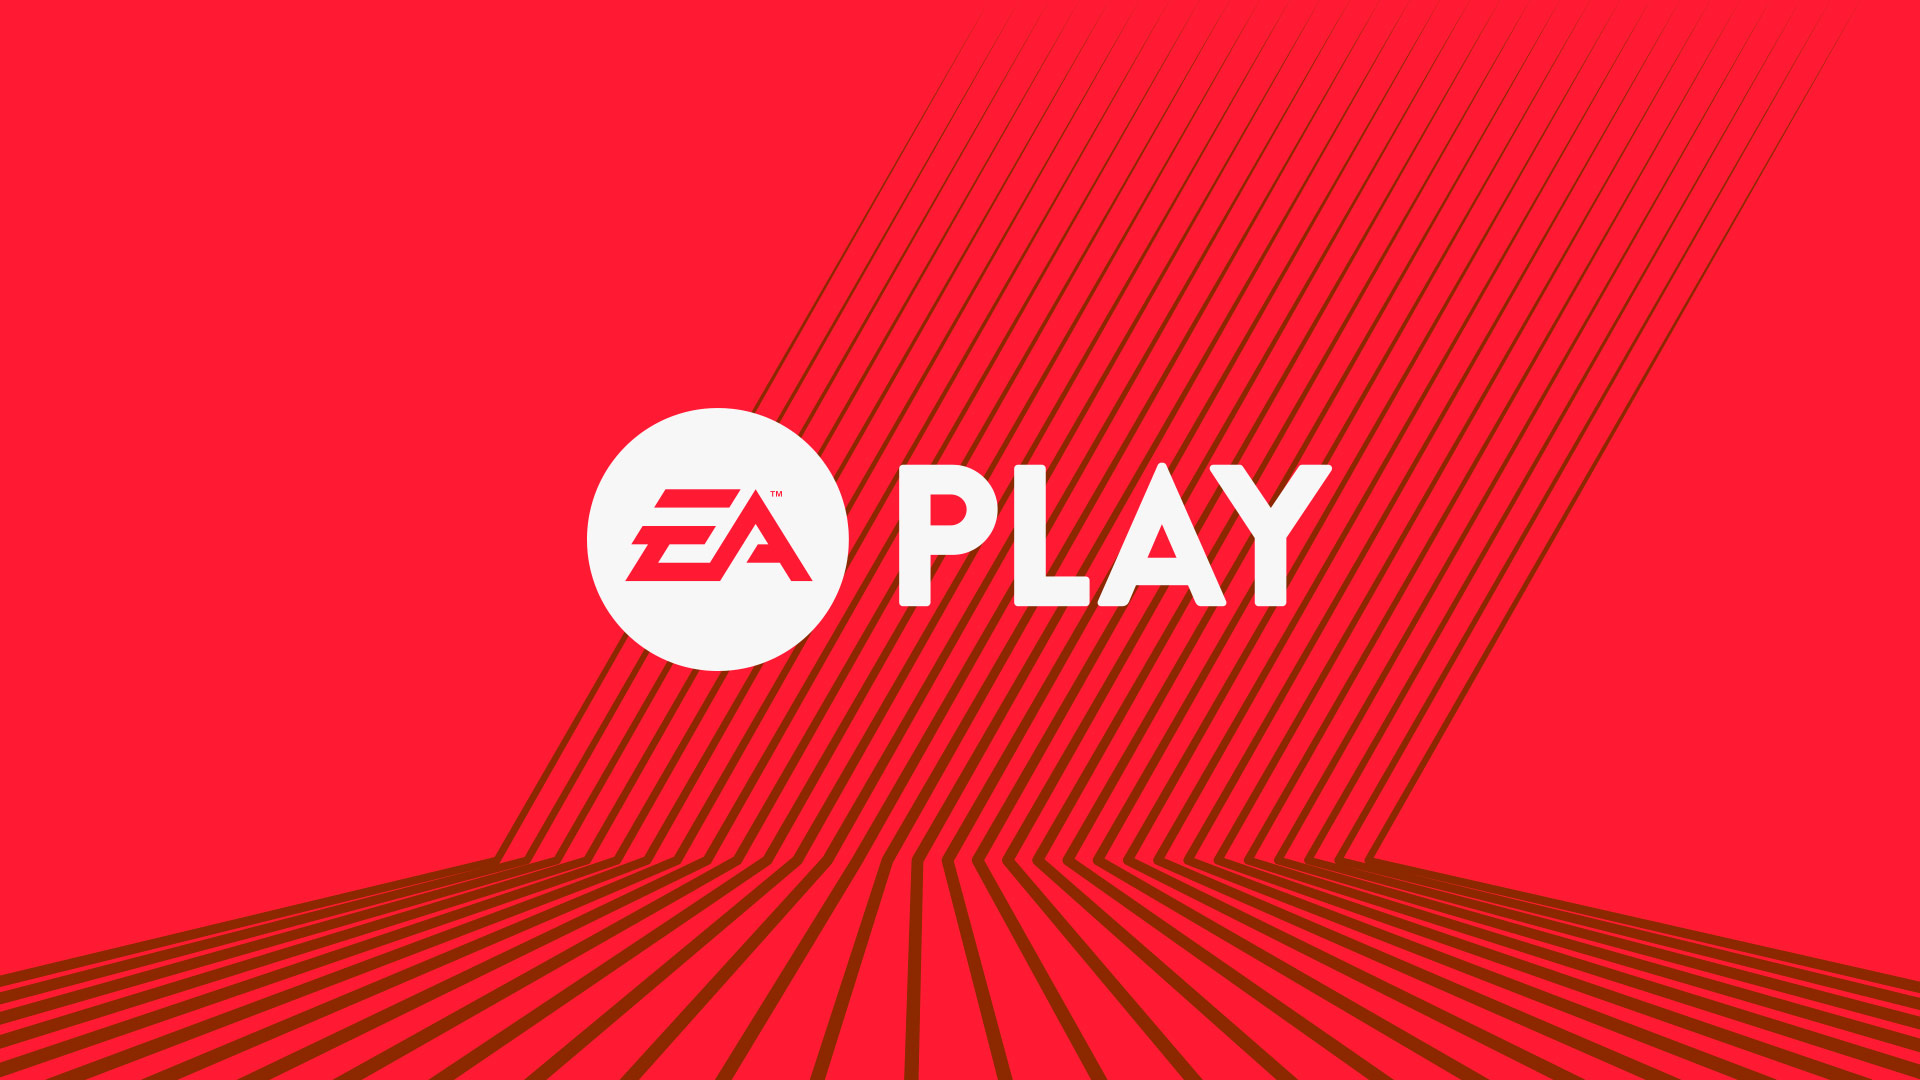 EA Play E3 2017